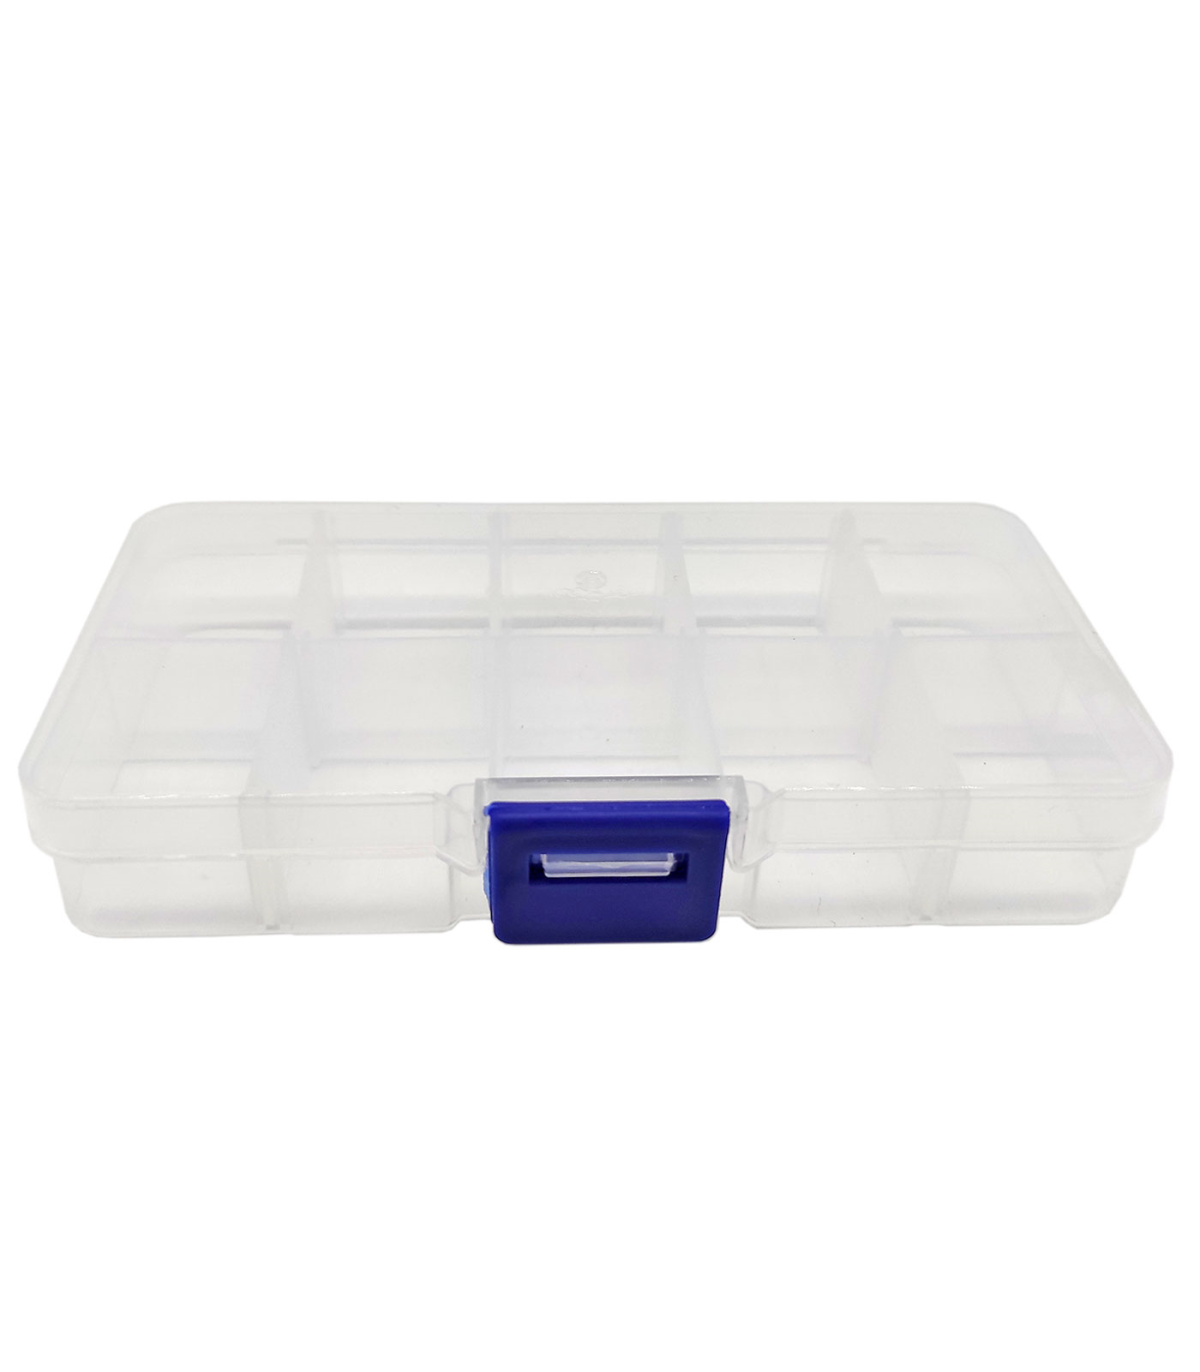 Tradineur - Caja organizadora de plástico con 10 compartimentos y